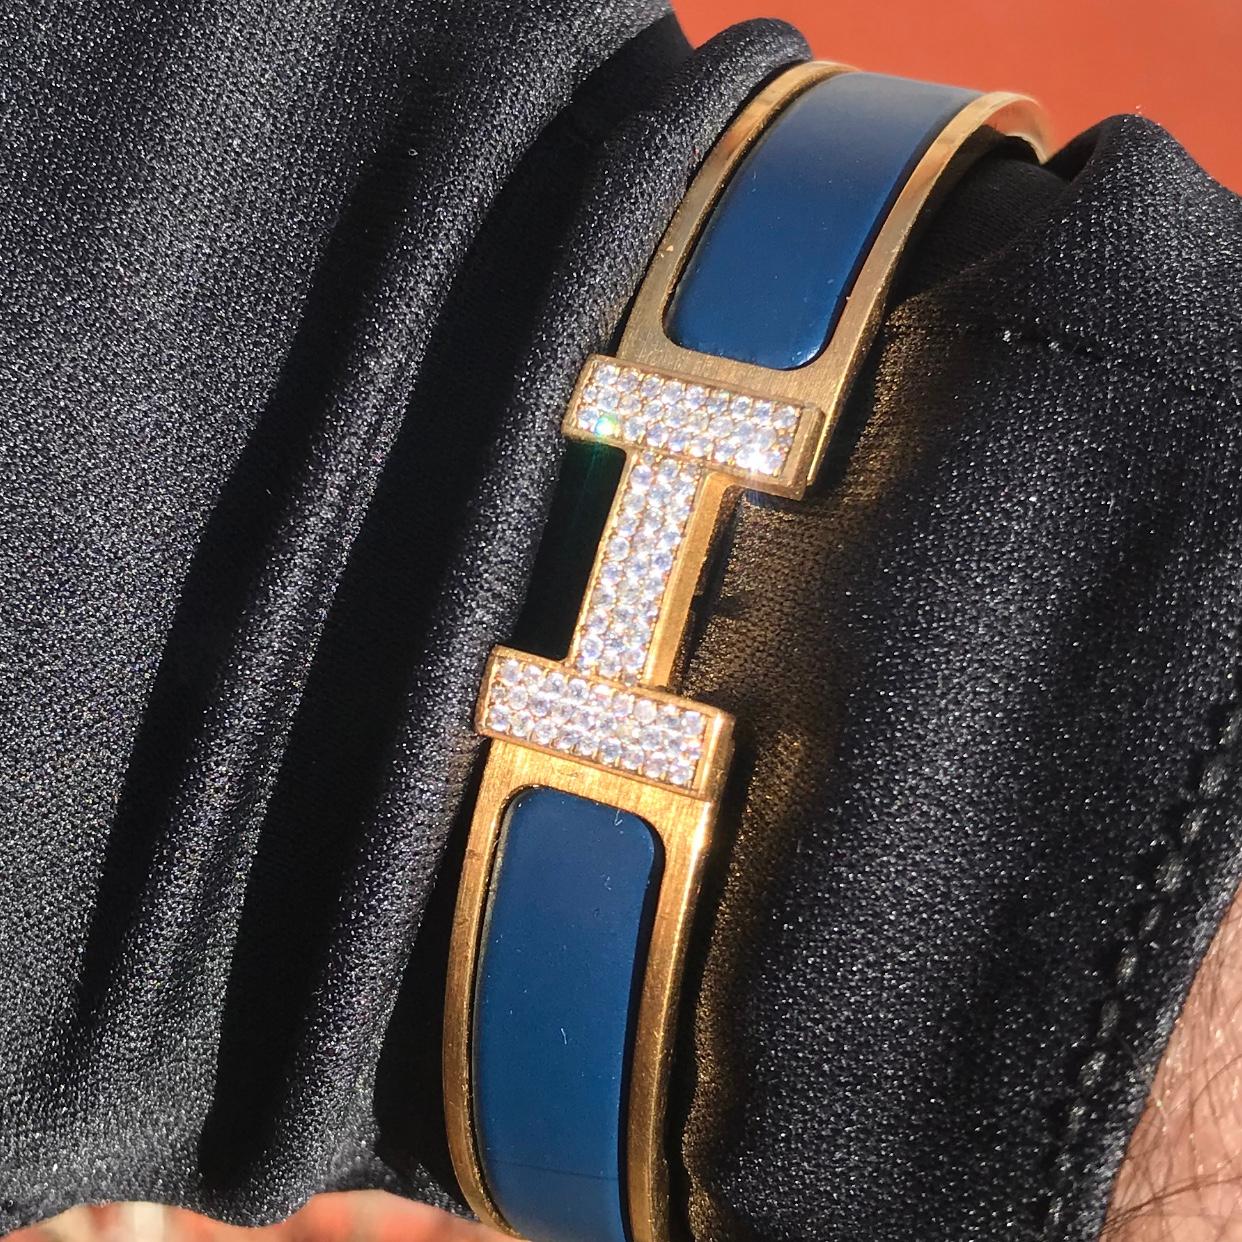 Custom Diamond Hermes Clic H Armband komplett mit Originalverpackung.

Ein originales Hermes Clic H Armband in der Größe GM in Blau und Gold ist individuell von Hand mit ca. 1,25 Karat echten, erdgeschliffenen VS-SI Diamanten besetzt. Die Diamanten